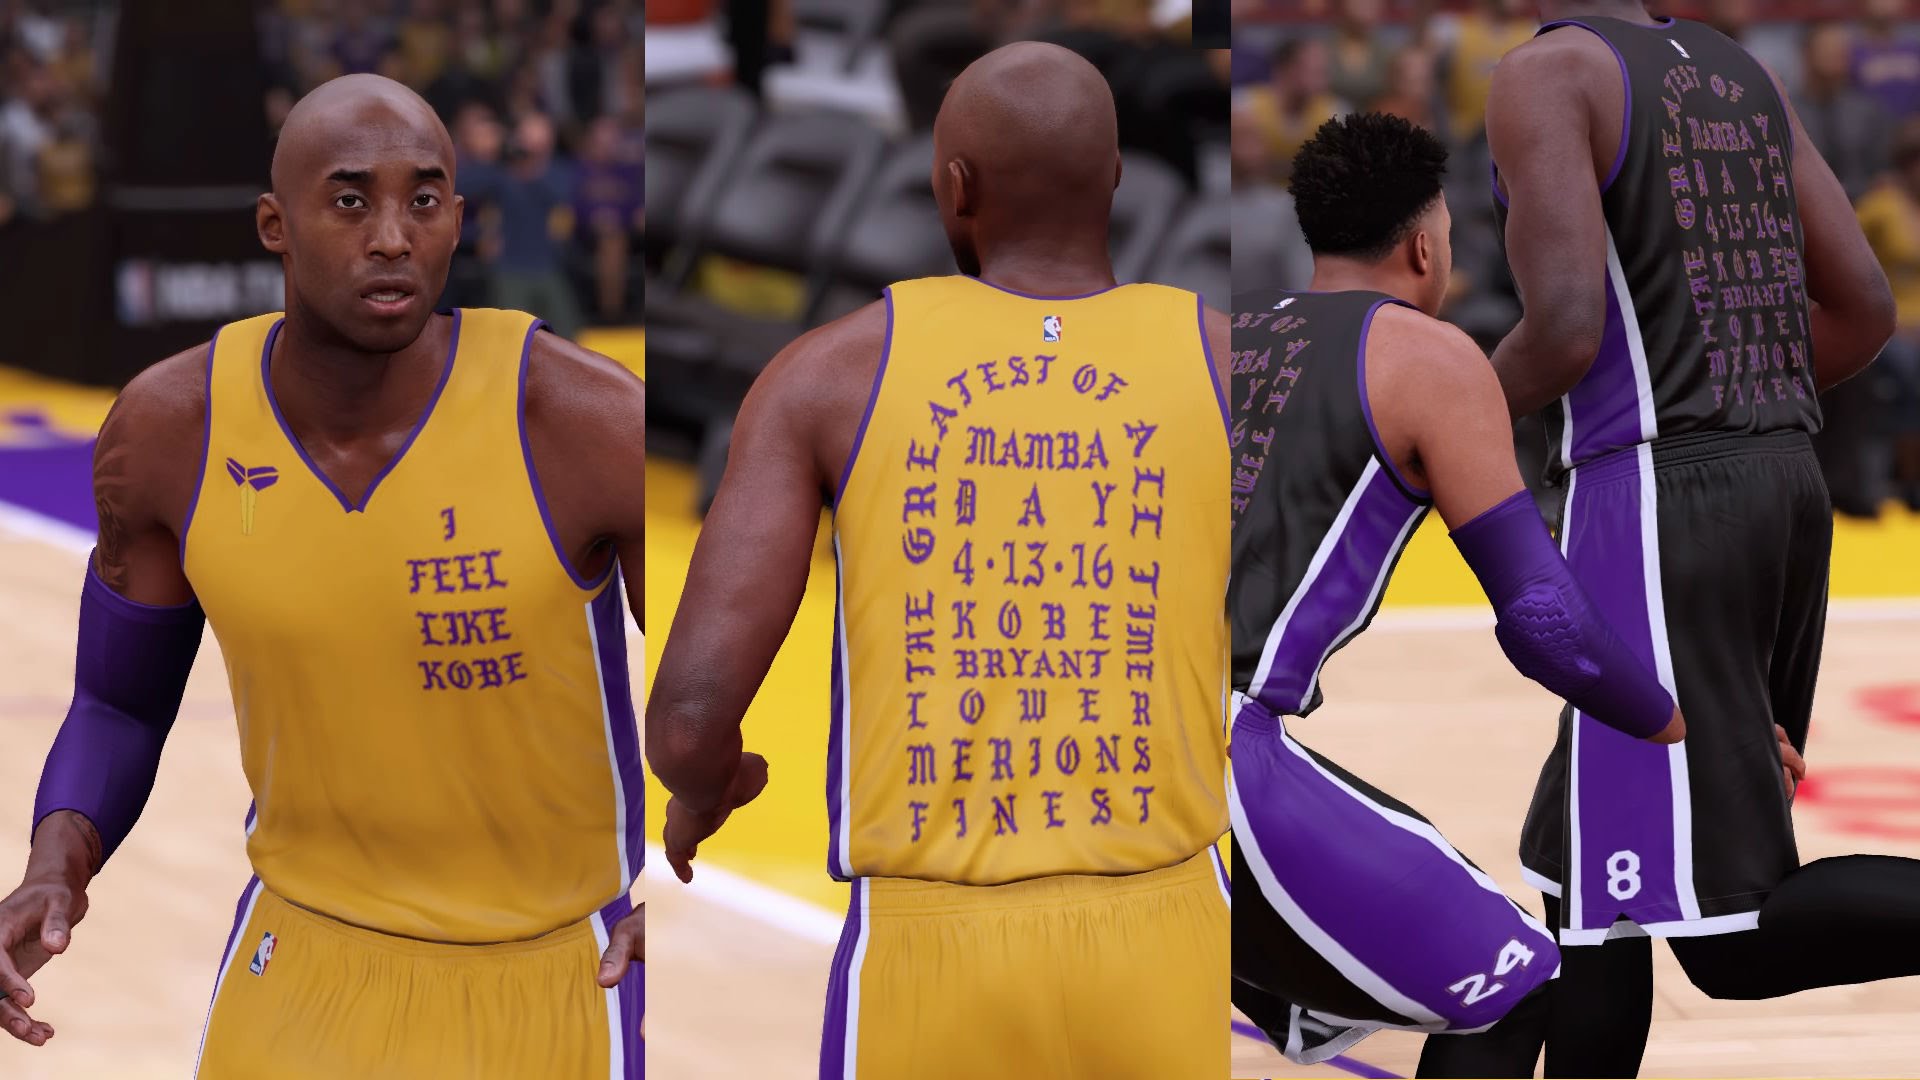 LA Lakers 'I Feel Like Kobe' Uniforms x NBA 2K16